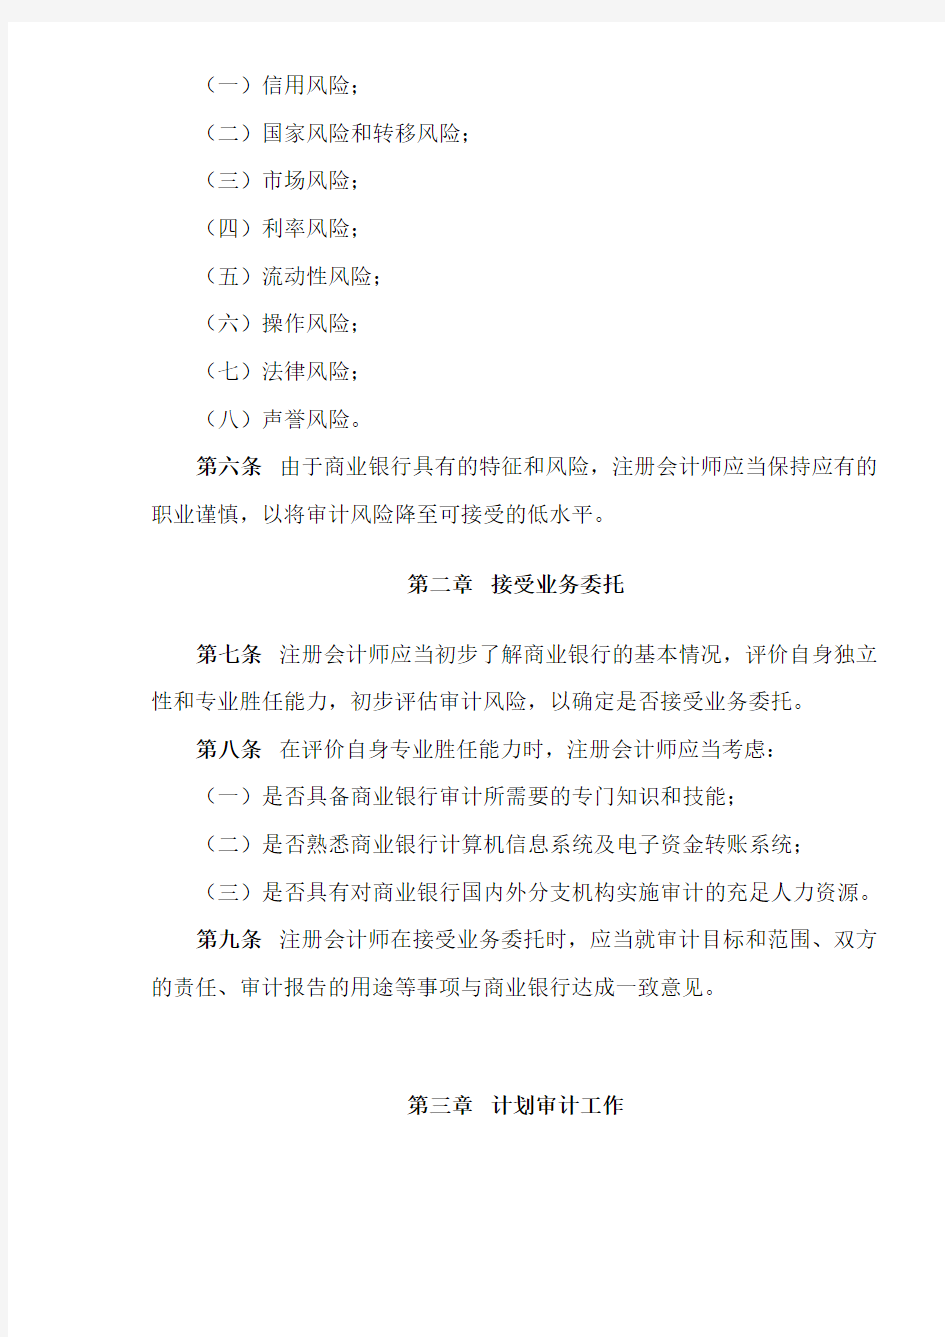 中国注册会计师审计准则第1611号—商业银行财务报表审计(doc 14)